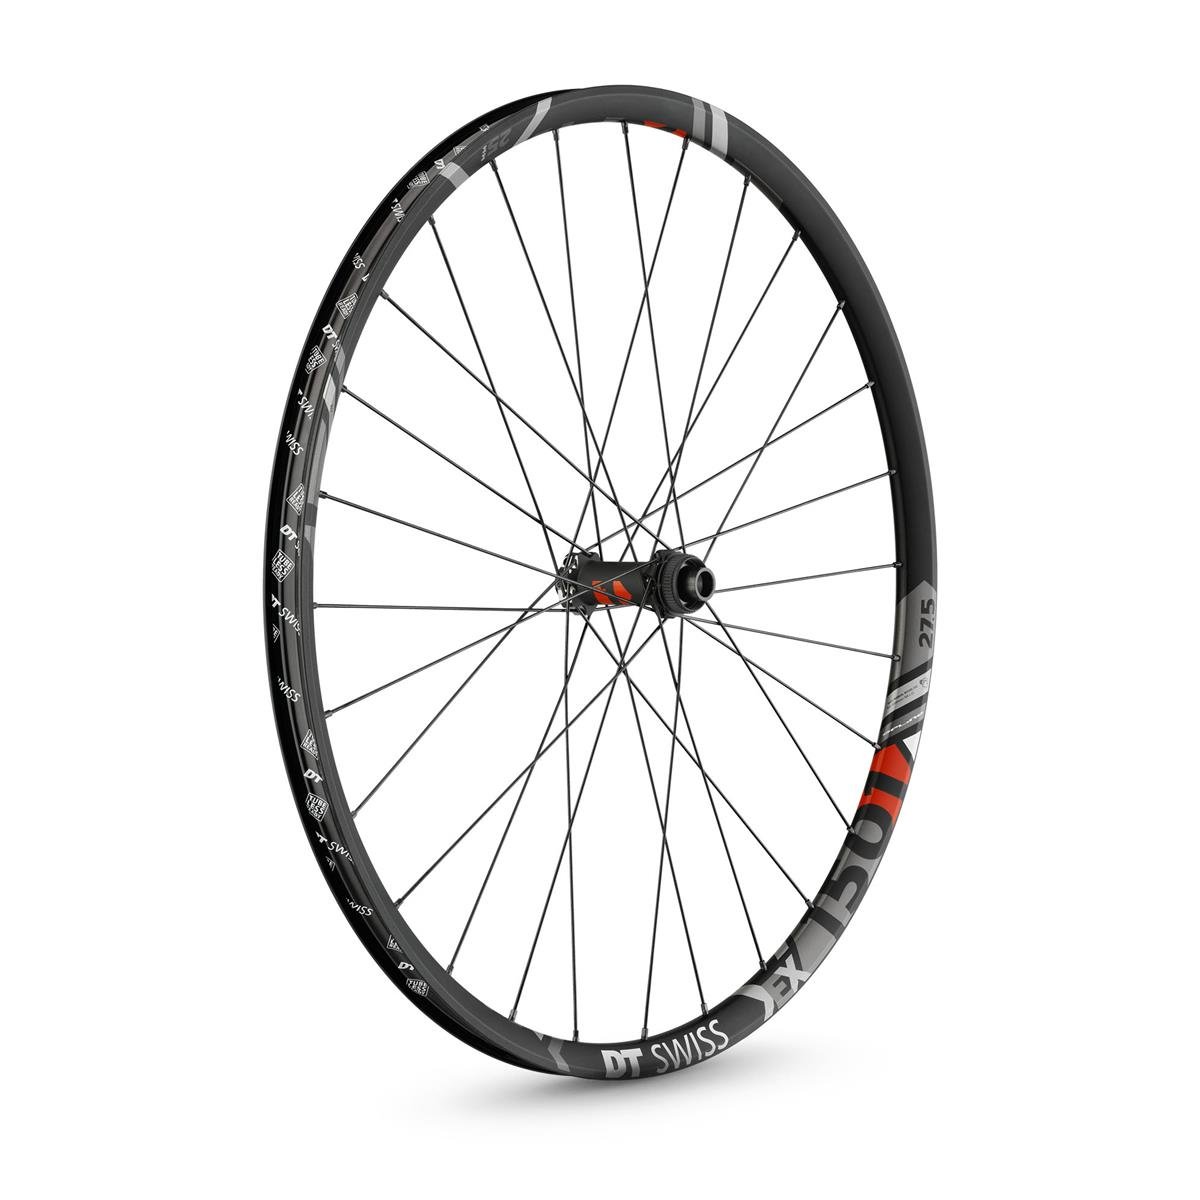 DT Swiss Wheel EX 1501 Spline One Front, 27,5 Inches, 15x100 mm TA, Center Lock, 25 mm